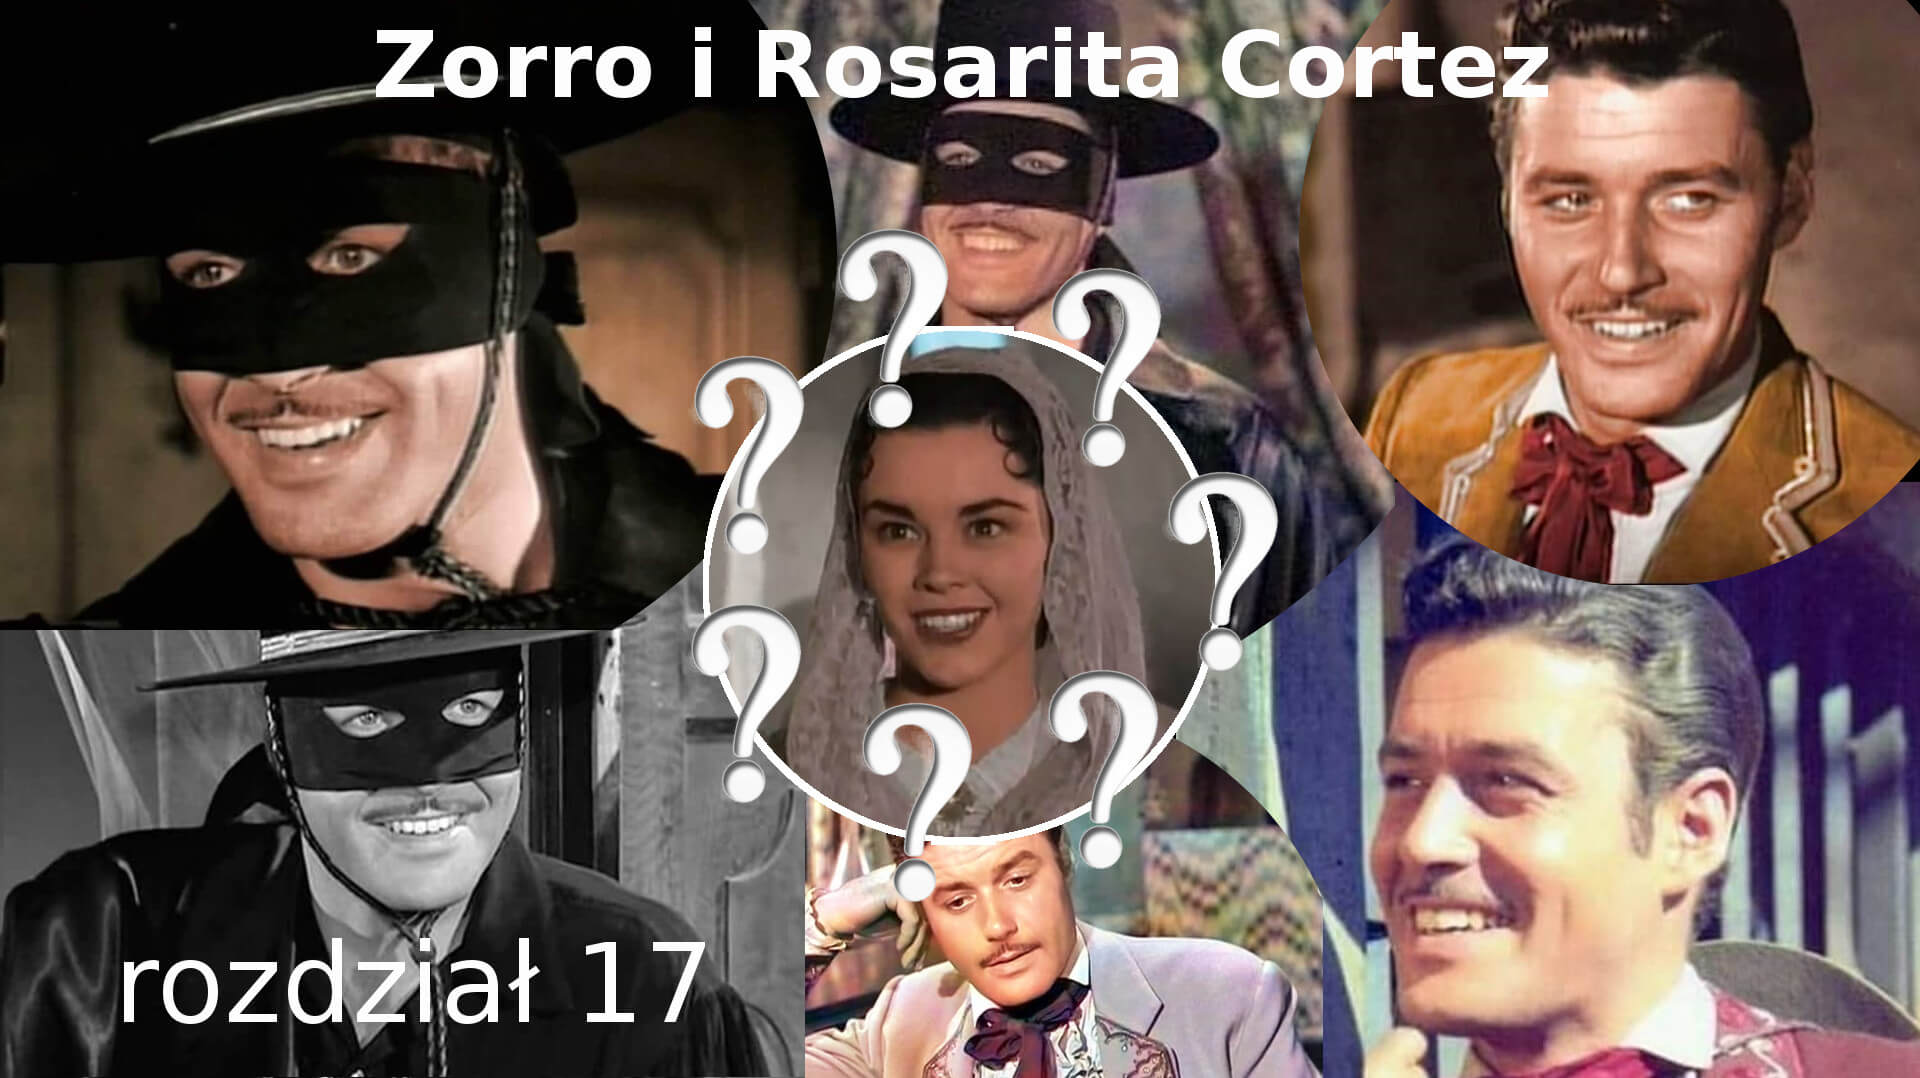 Zorro i Rosarita Cortez rozdział 17 Zorro fanfiction